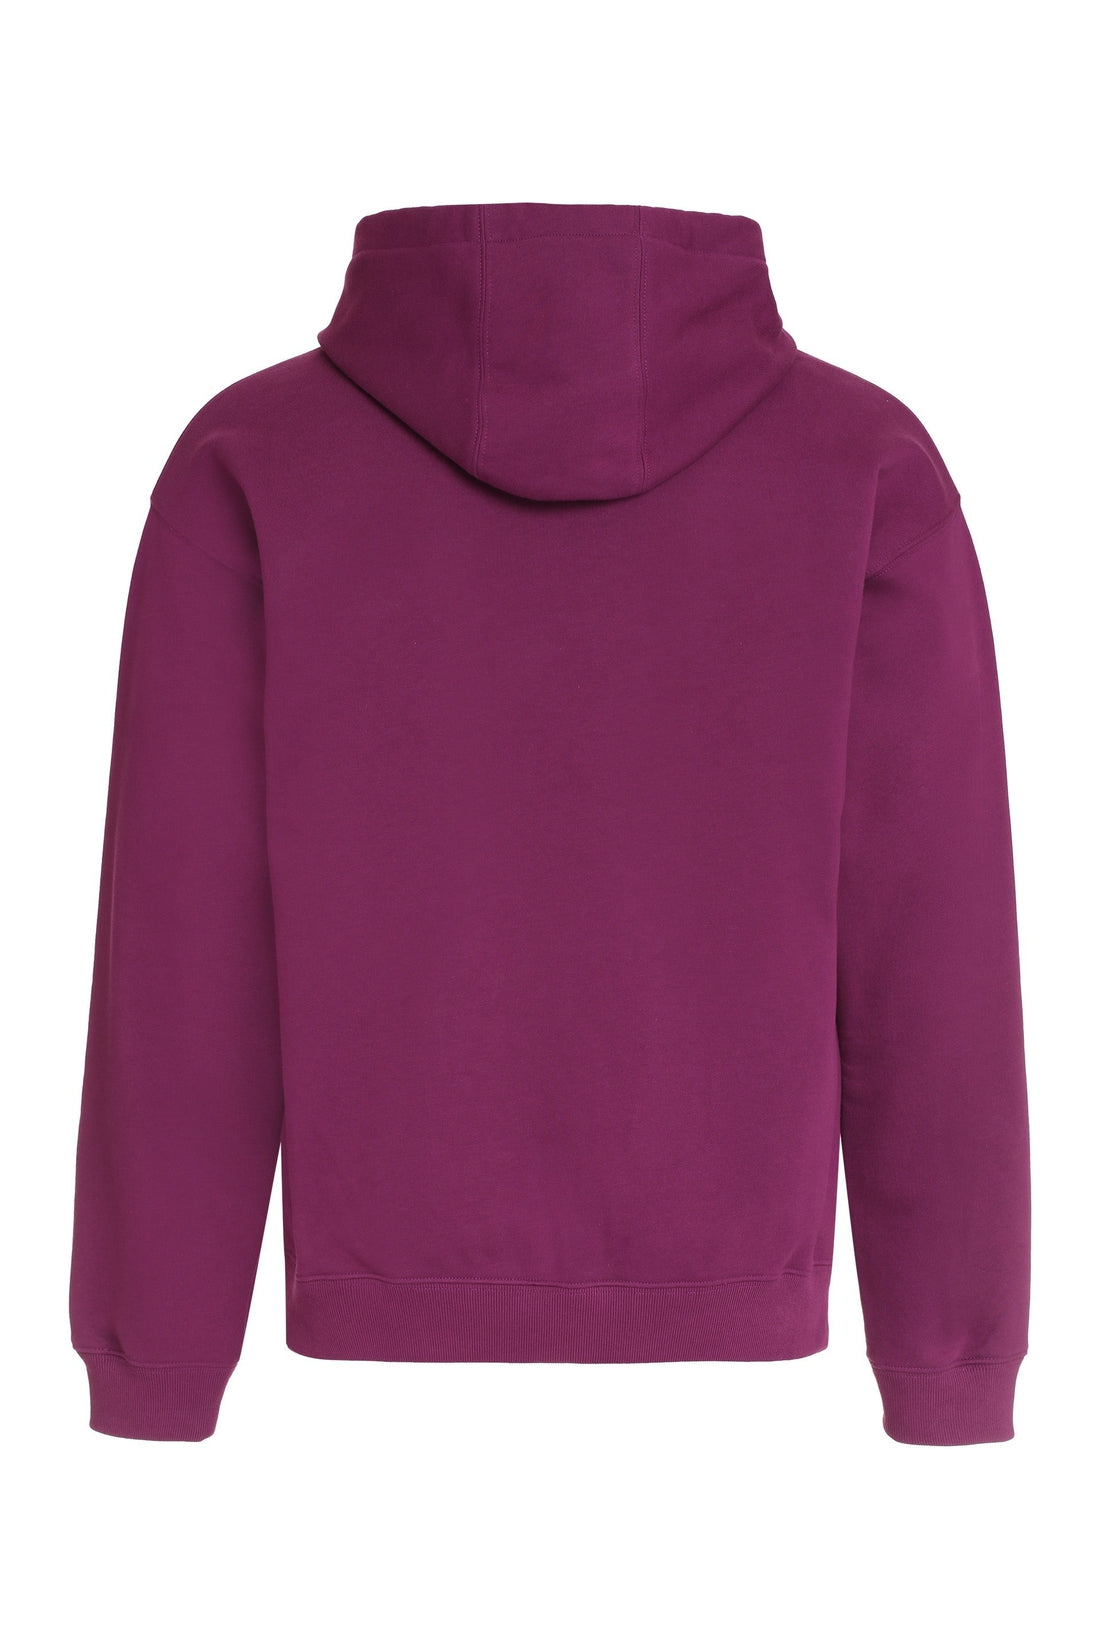 Versace-OUTLET-SALE-Logo detail cotton sweatshirt-ARCHIVIST